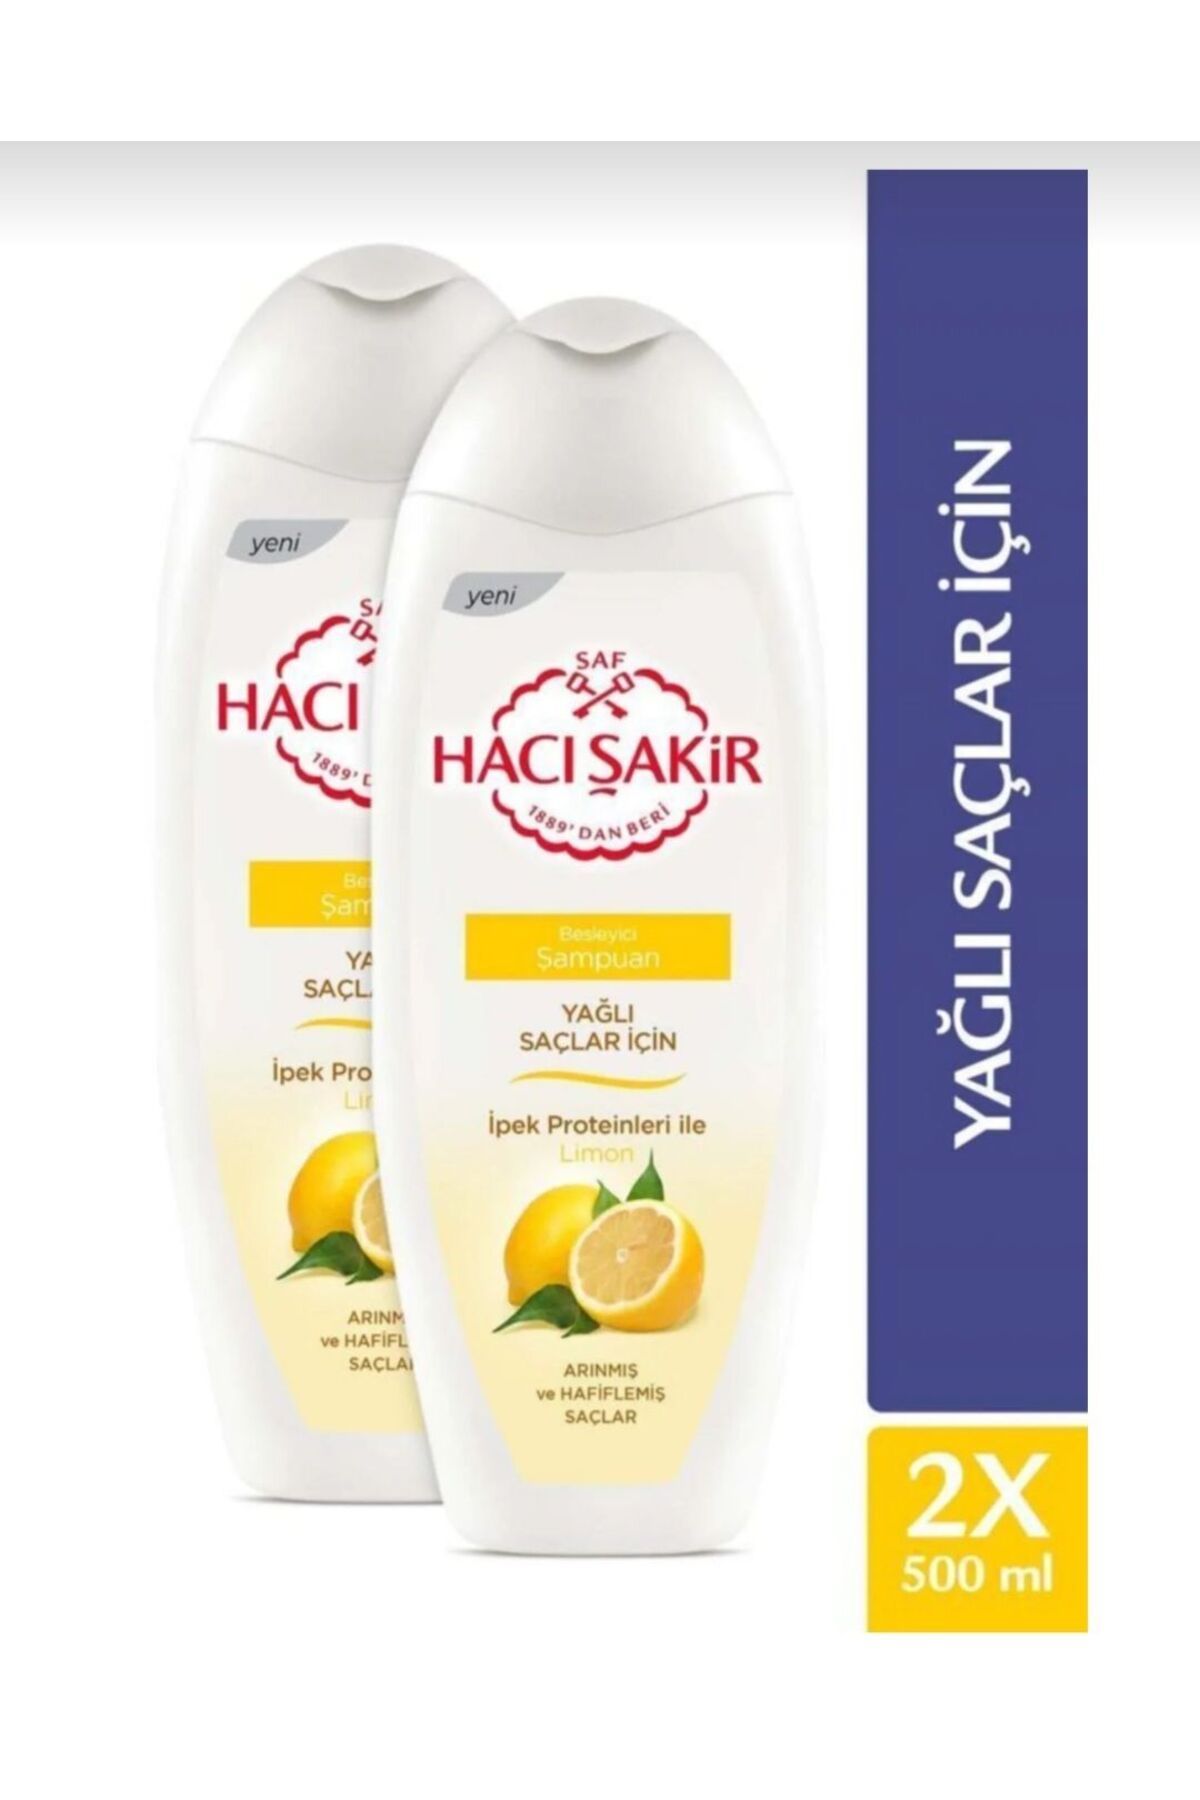 Hacı Şakir HACİ şakir yağlı saçlar için limon besleyici şampuan 500 ml 2 ADET